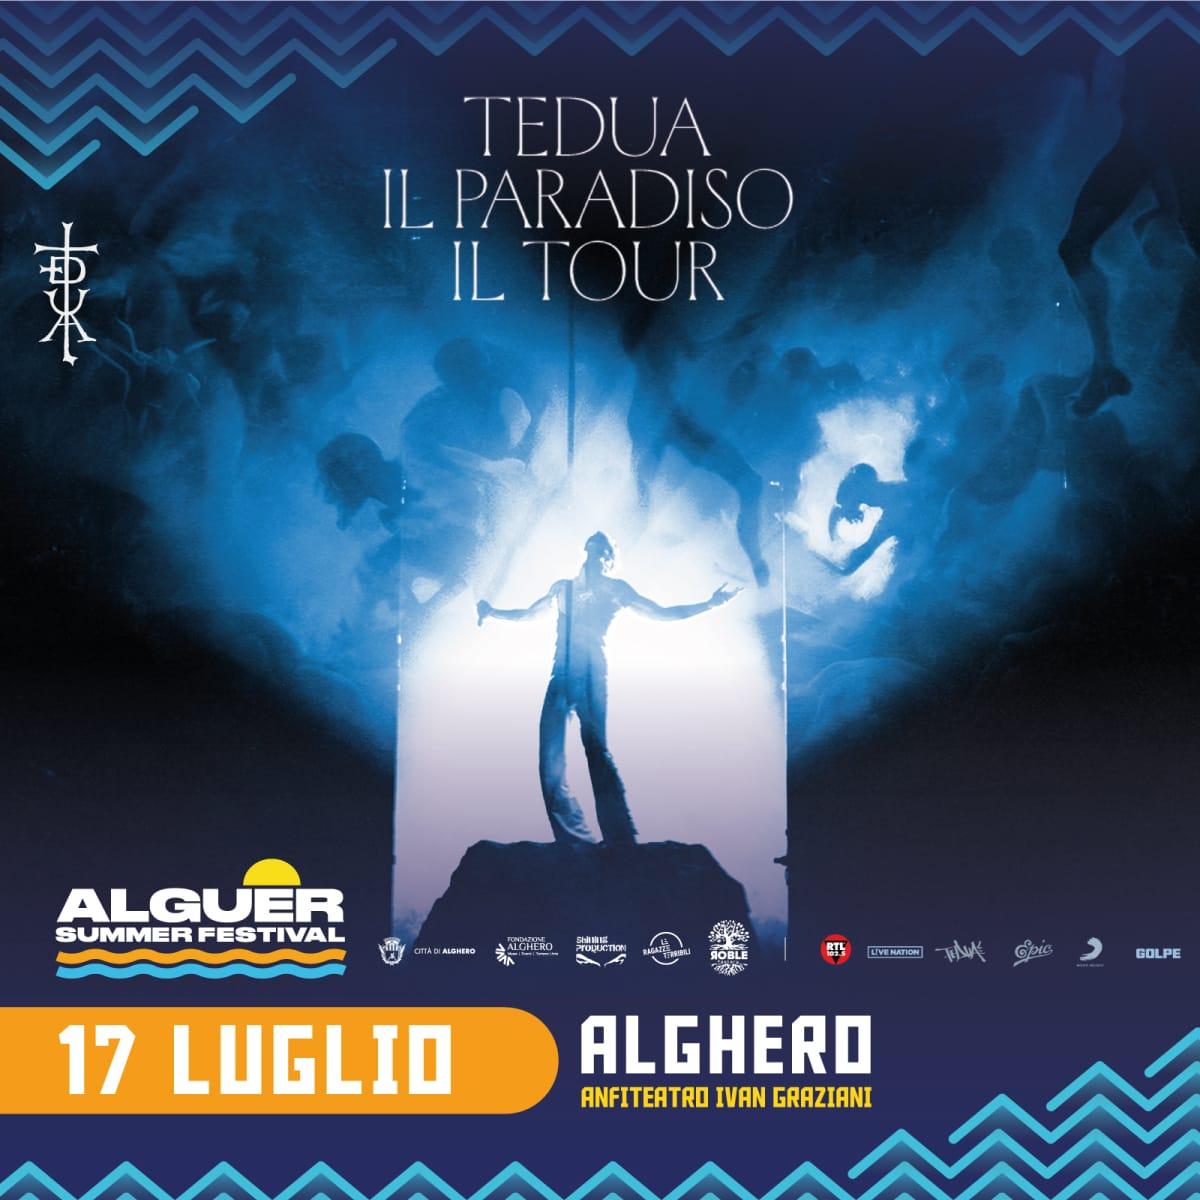 Featured image for “Tedua sarà sul palco di Alghero il 17 luglio!”